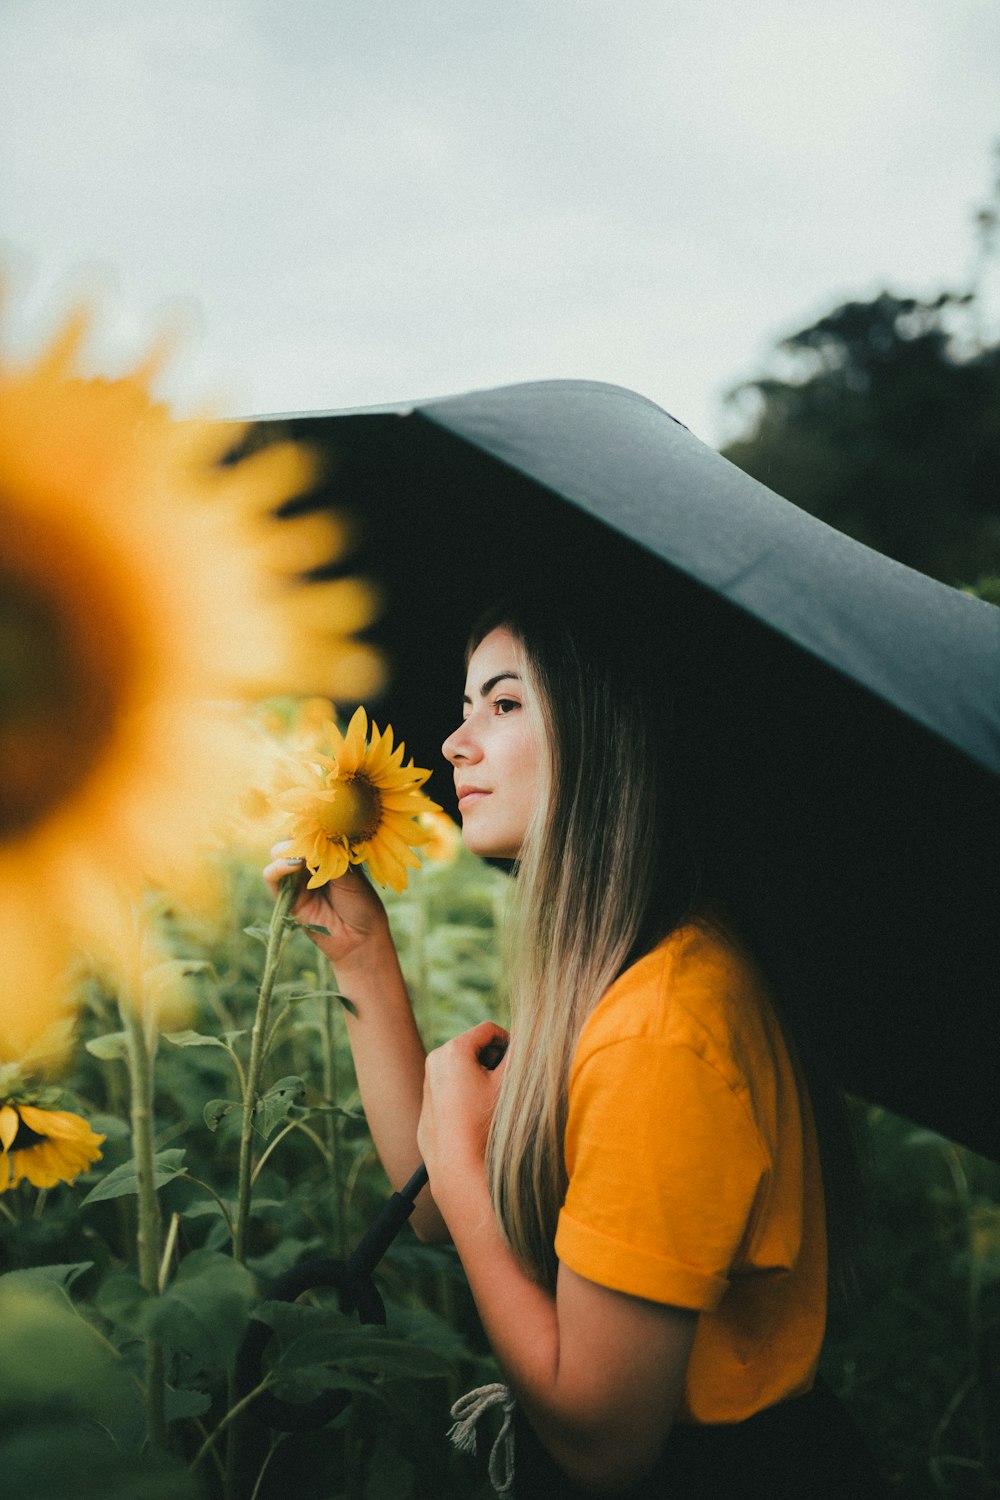 eine Frau steht in einem Sonnenblumenfeld und hält einen Regenschirm in der Hand